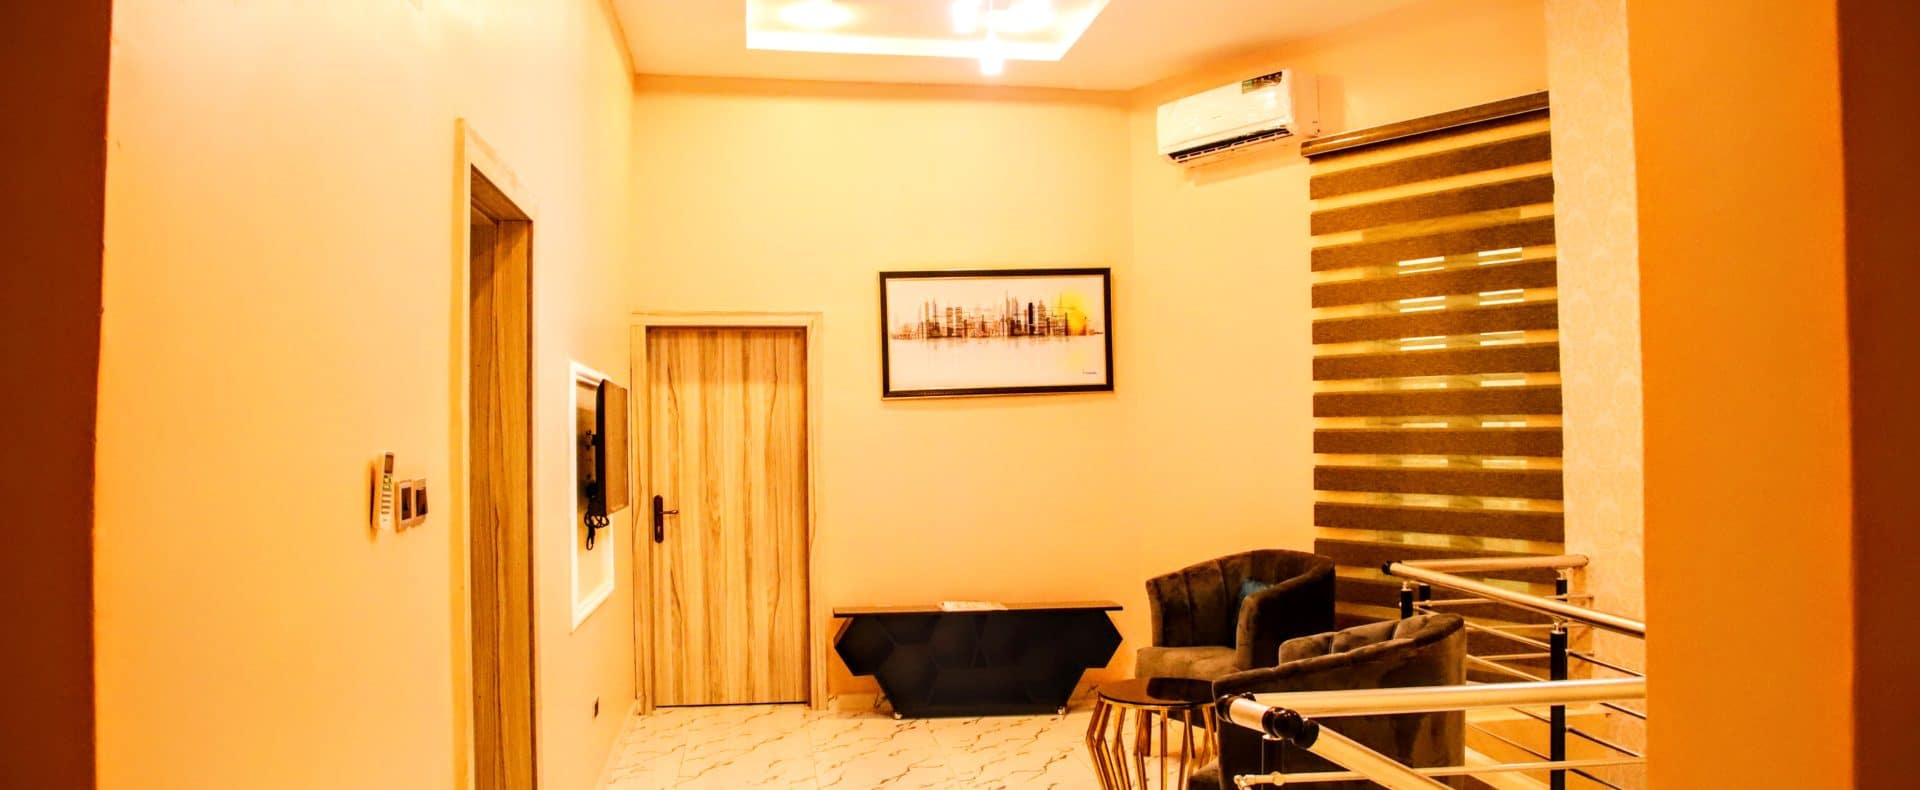 4 Bedroom Comfort Haven Short Let In Lagos Nigeria